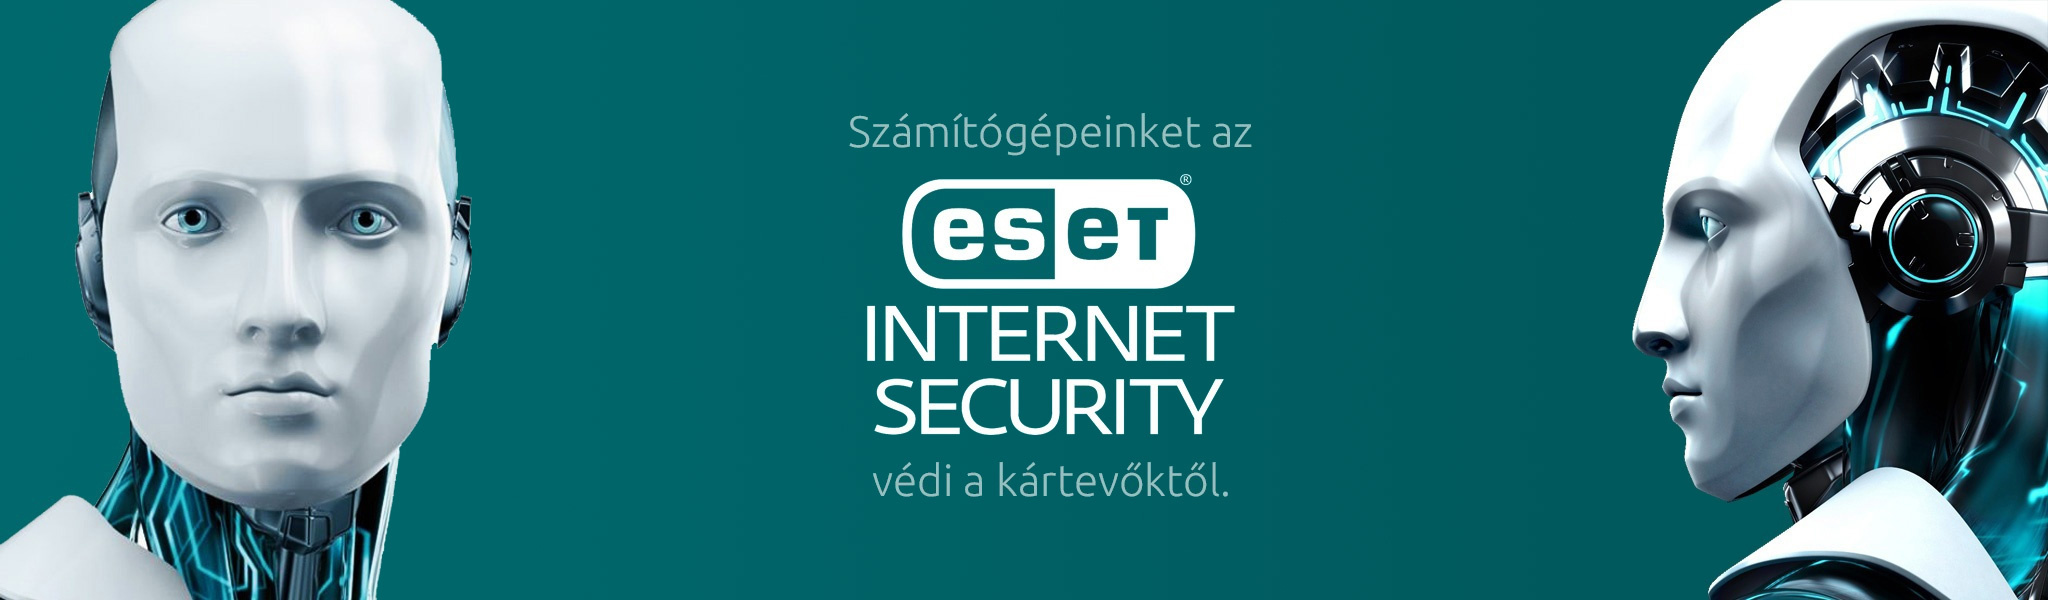 Számítógépeinket az ESET Internet Security védi a kártevőktől